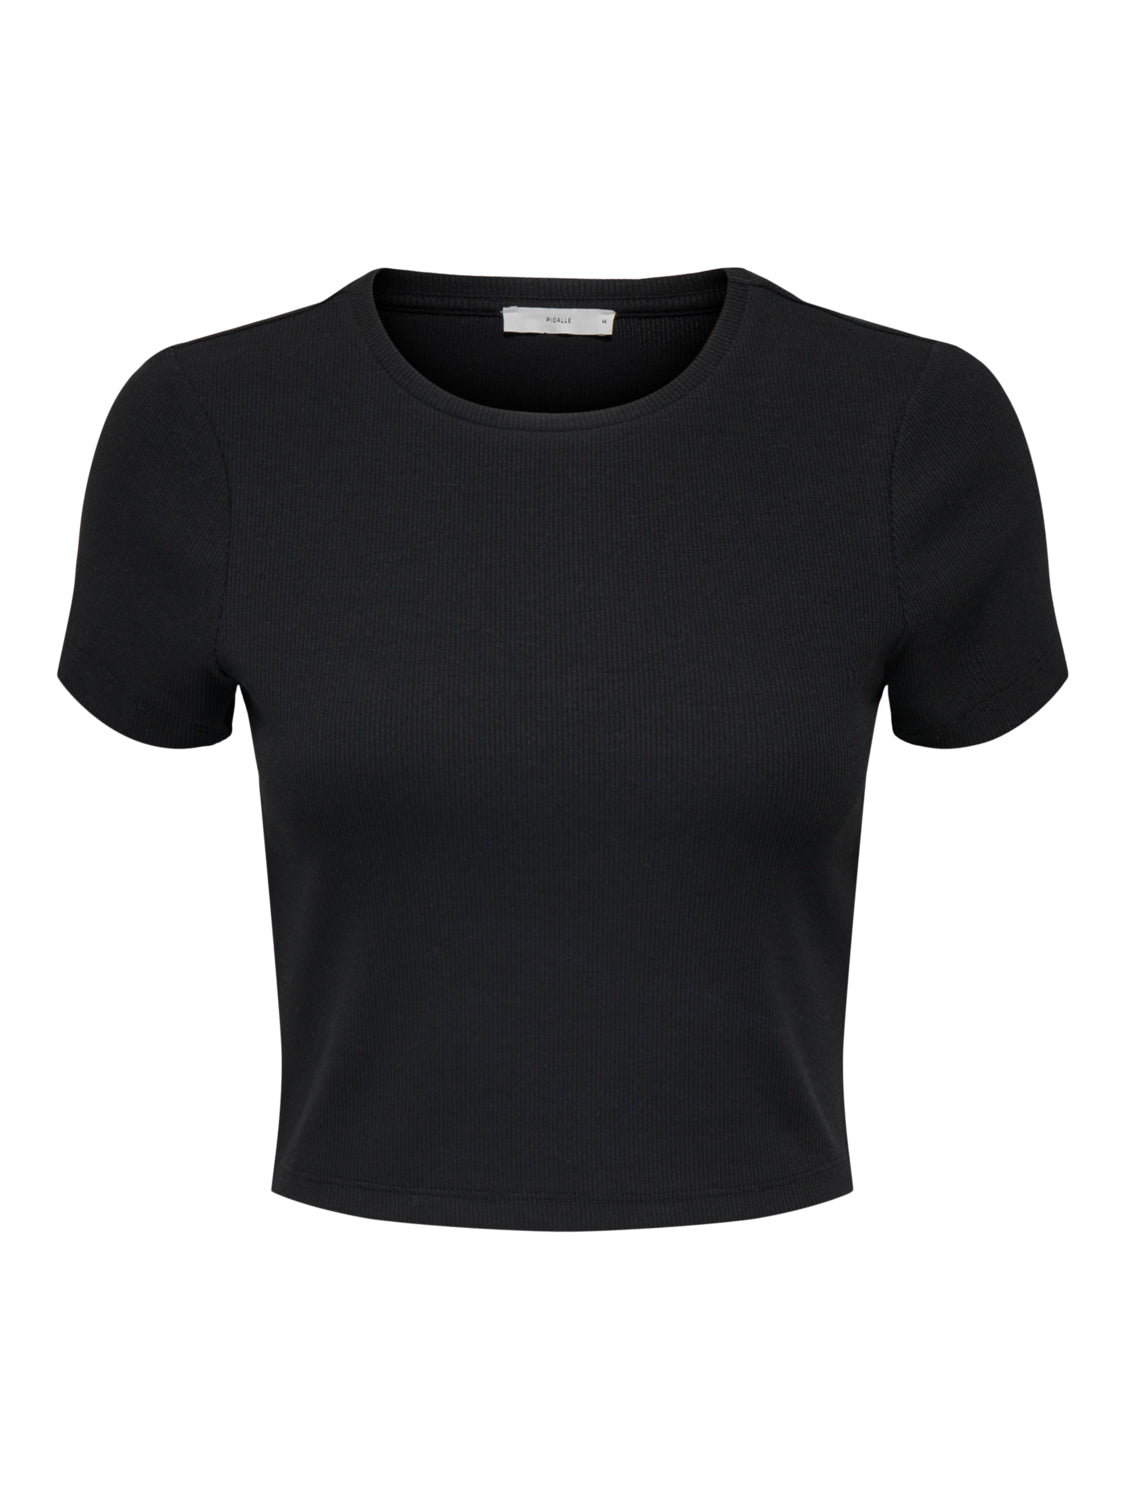 PGPAMMI T-Shirt - Black